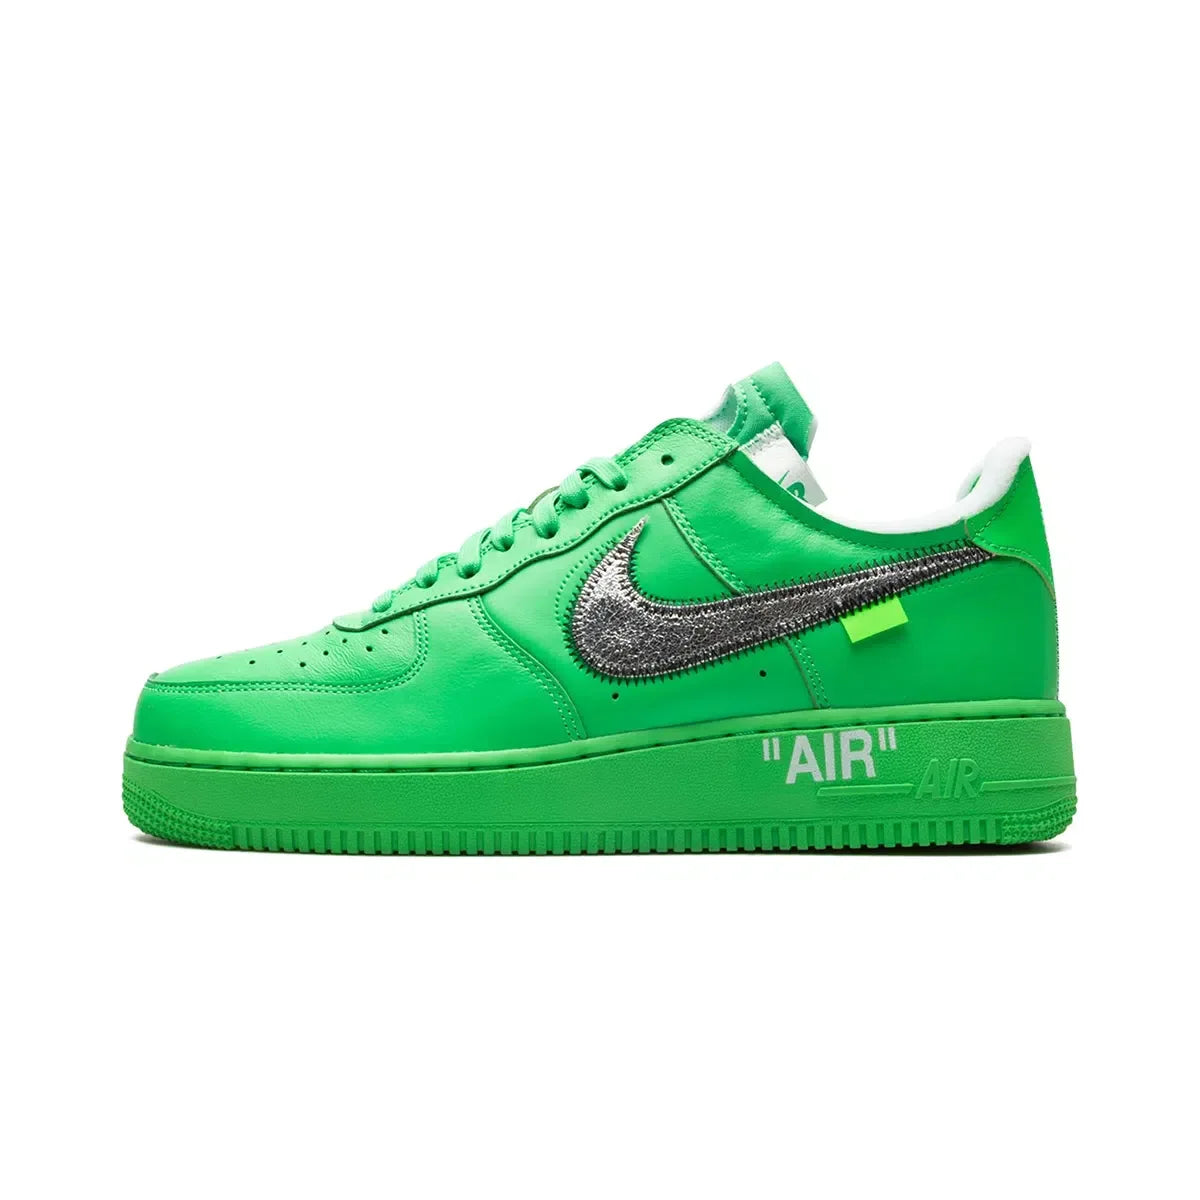 Lato esterno della sneakers Nike Air Force 1 Low Off White Light Green Spark